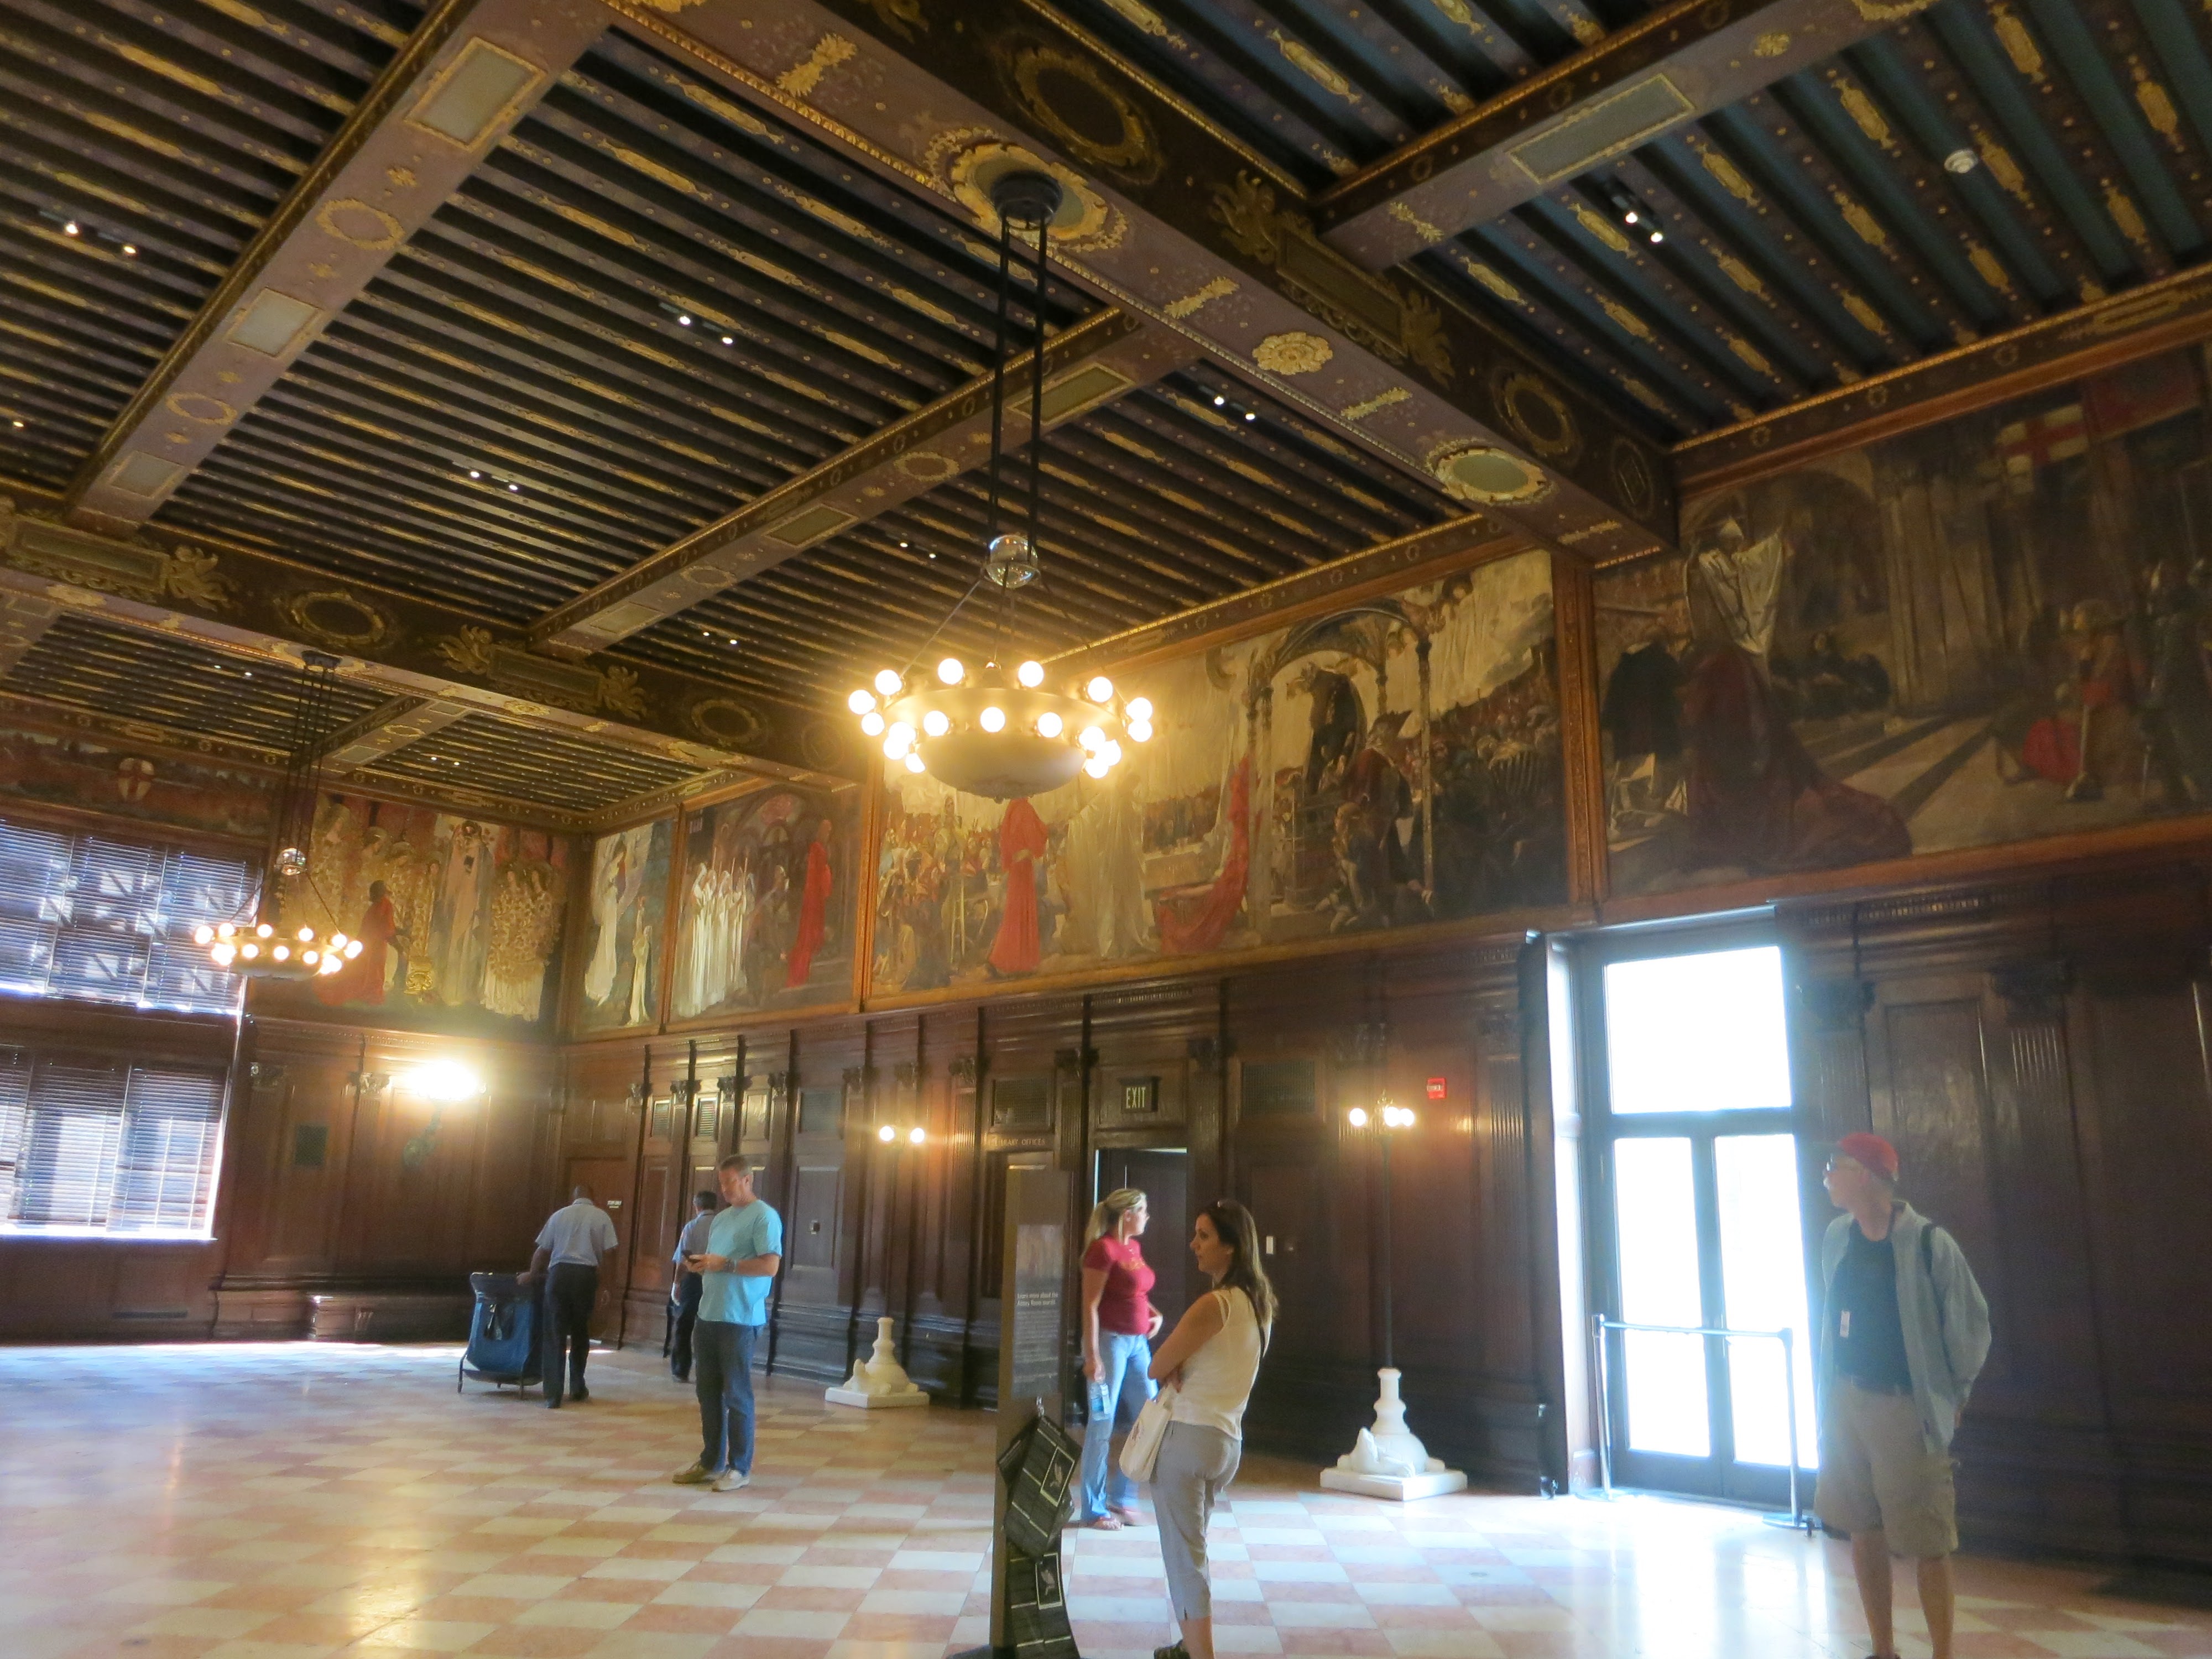 Ebben a teremben az Arthur király legendakörből Sir Galahad története van a freskókon, születésétől a Szent Grál megtalálásáig. 